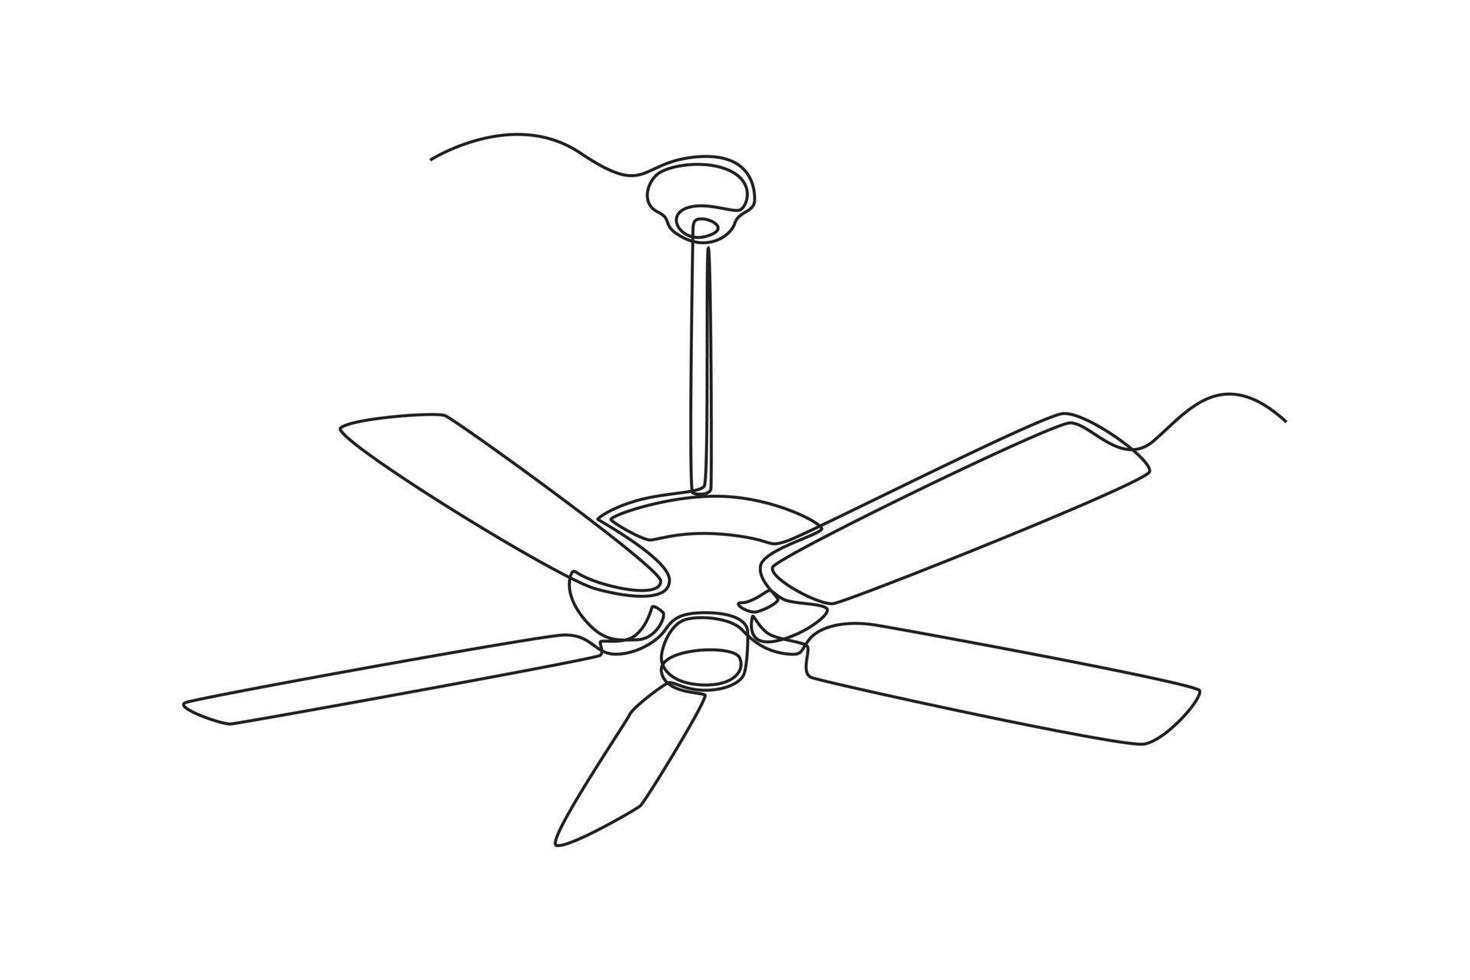 Single einer Linie Zeichnung elektrisch Decke Fan. Elektrizität Zuhause Gerät Konzept. kontinuierlich Linie zeichnen Design Grafik Vektor Illustration.